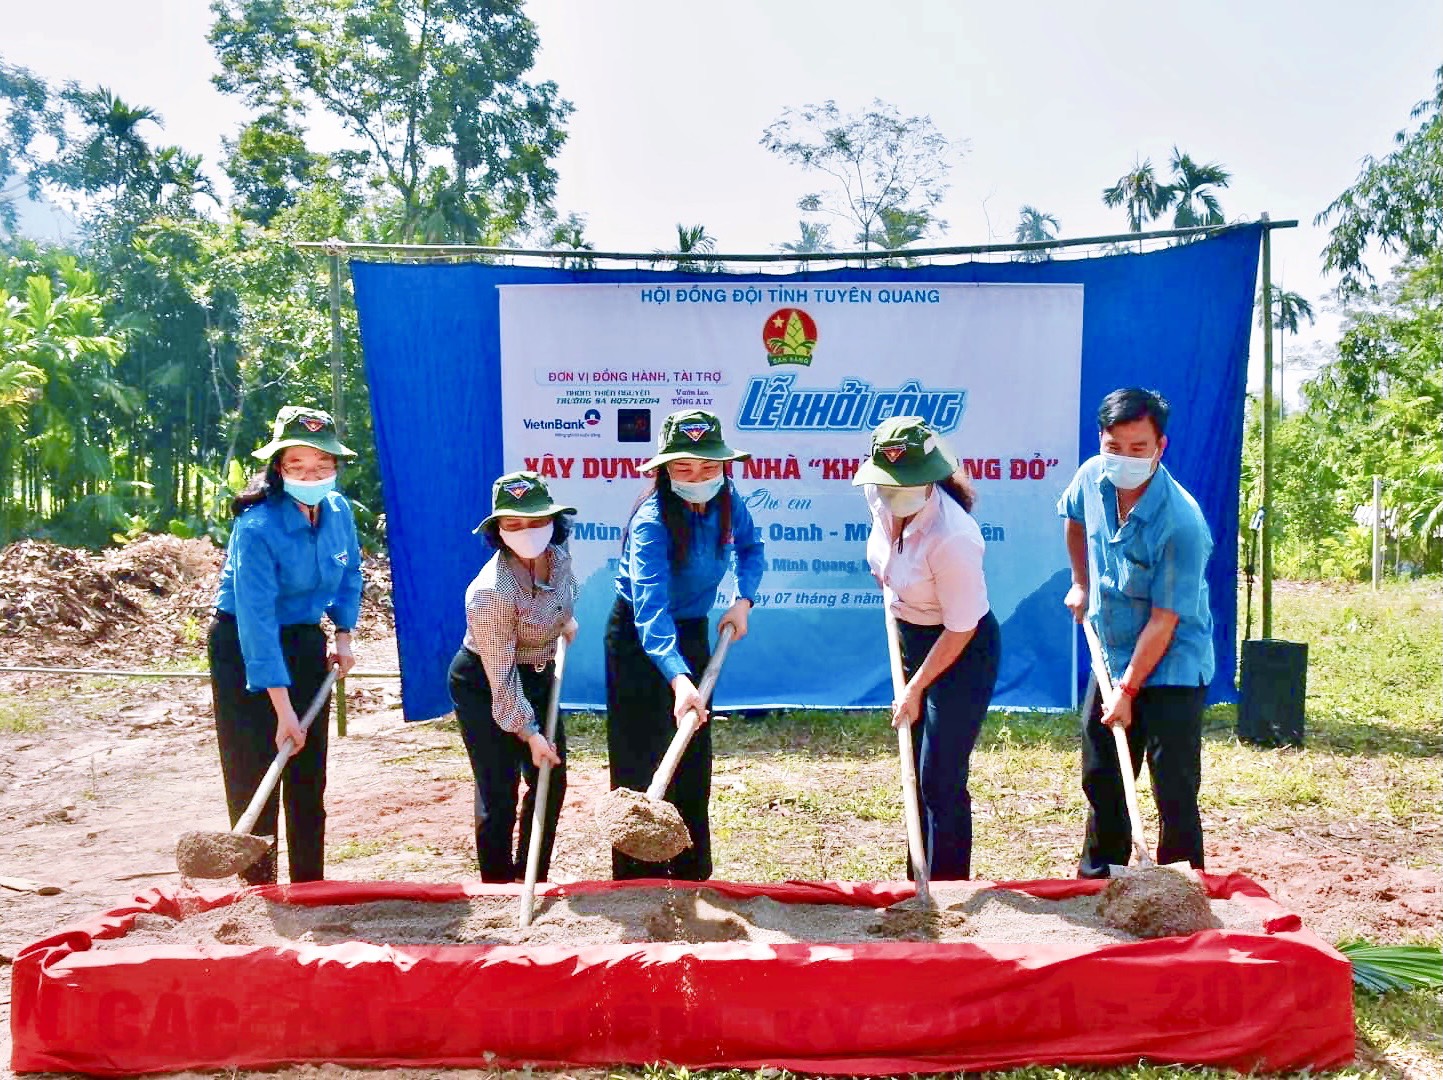 Hội đồng Đội tỉnh Tuyên Quang tổ chức Lễ khởi công xây dựng “Ngôi nhà Khăn quàng đỏ” cấp tỉnh tại huyện Lâm Bình